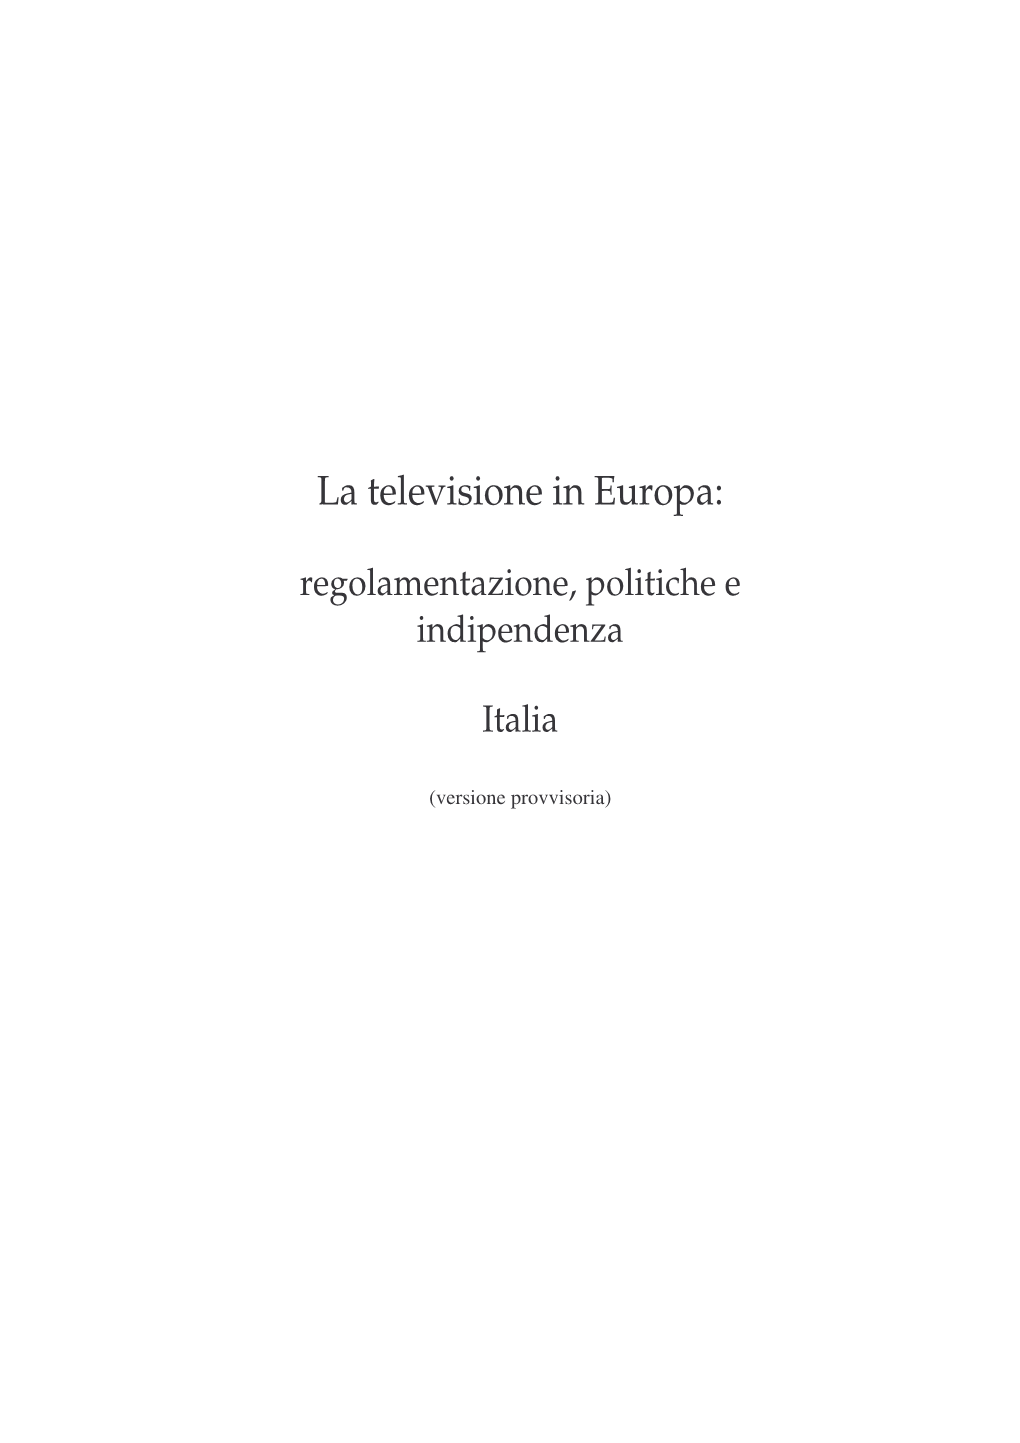 La Televisione in Europa: Italia